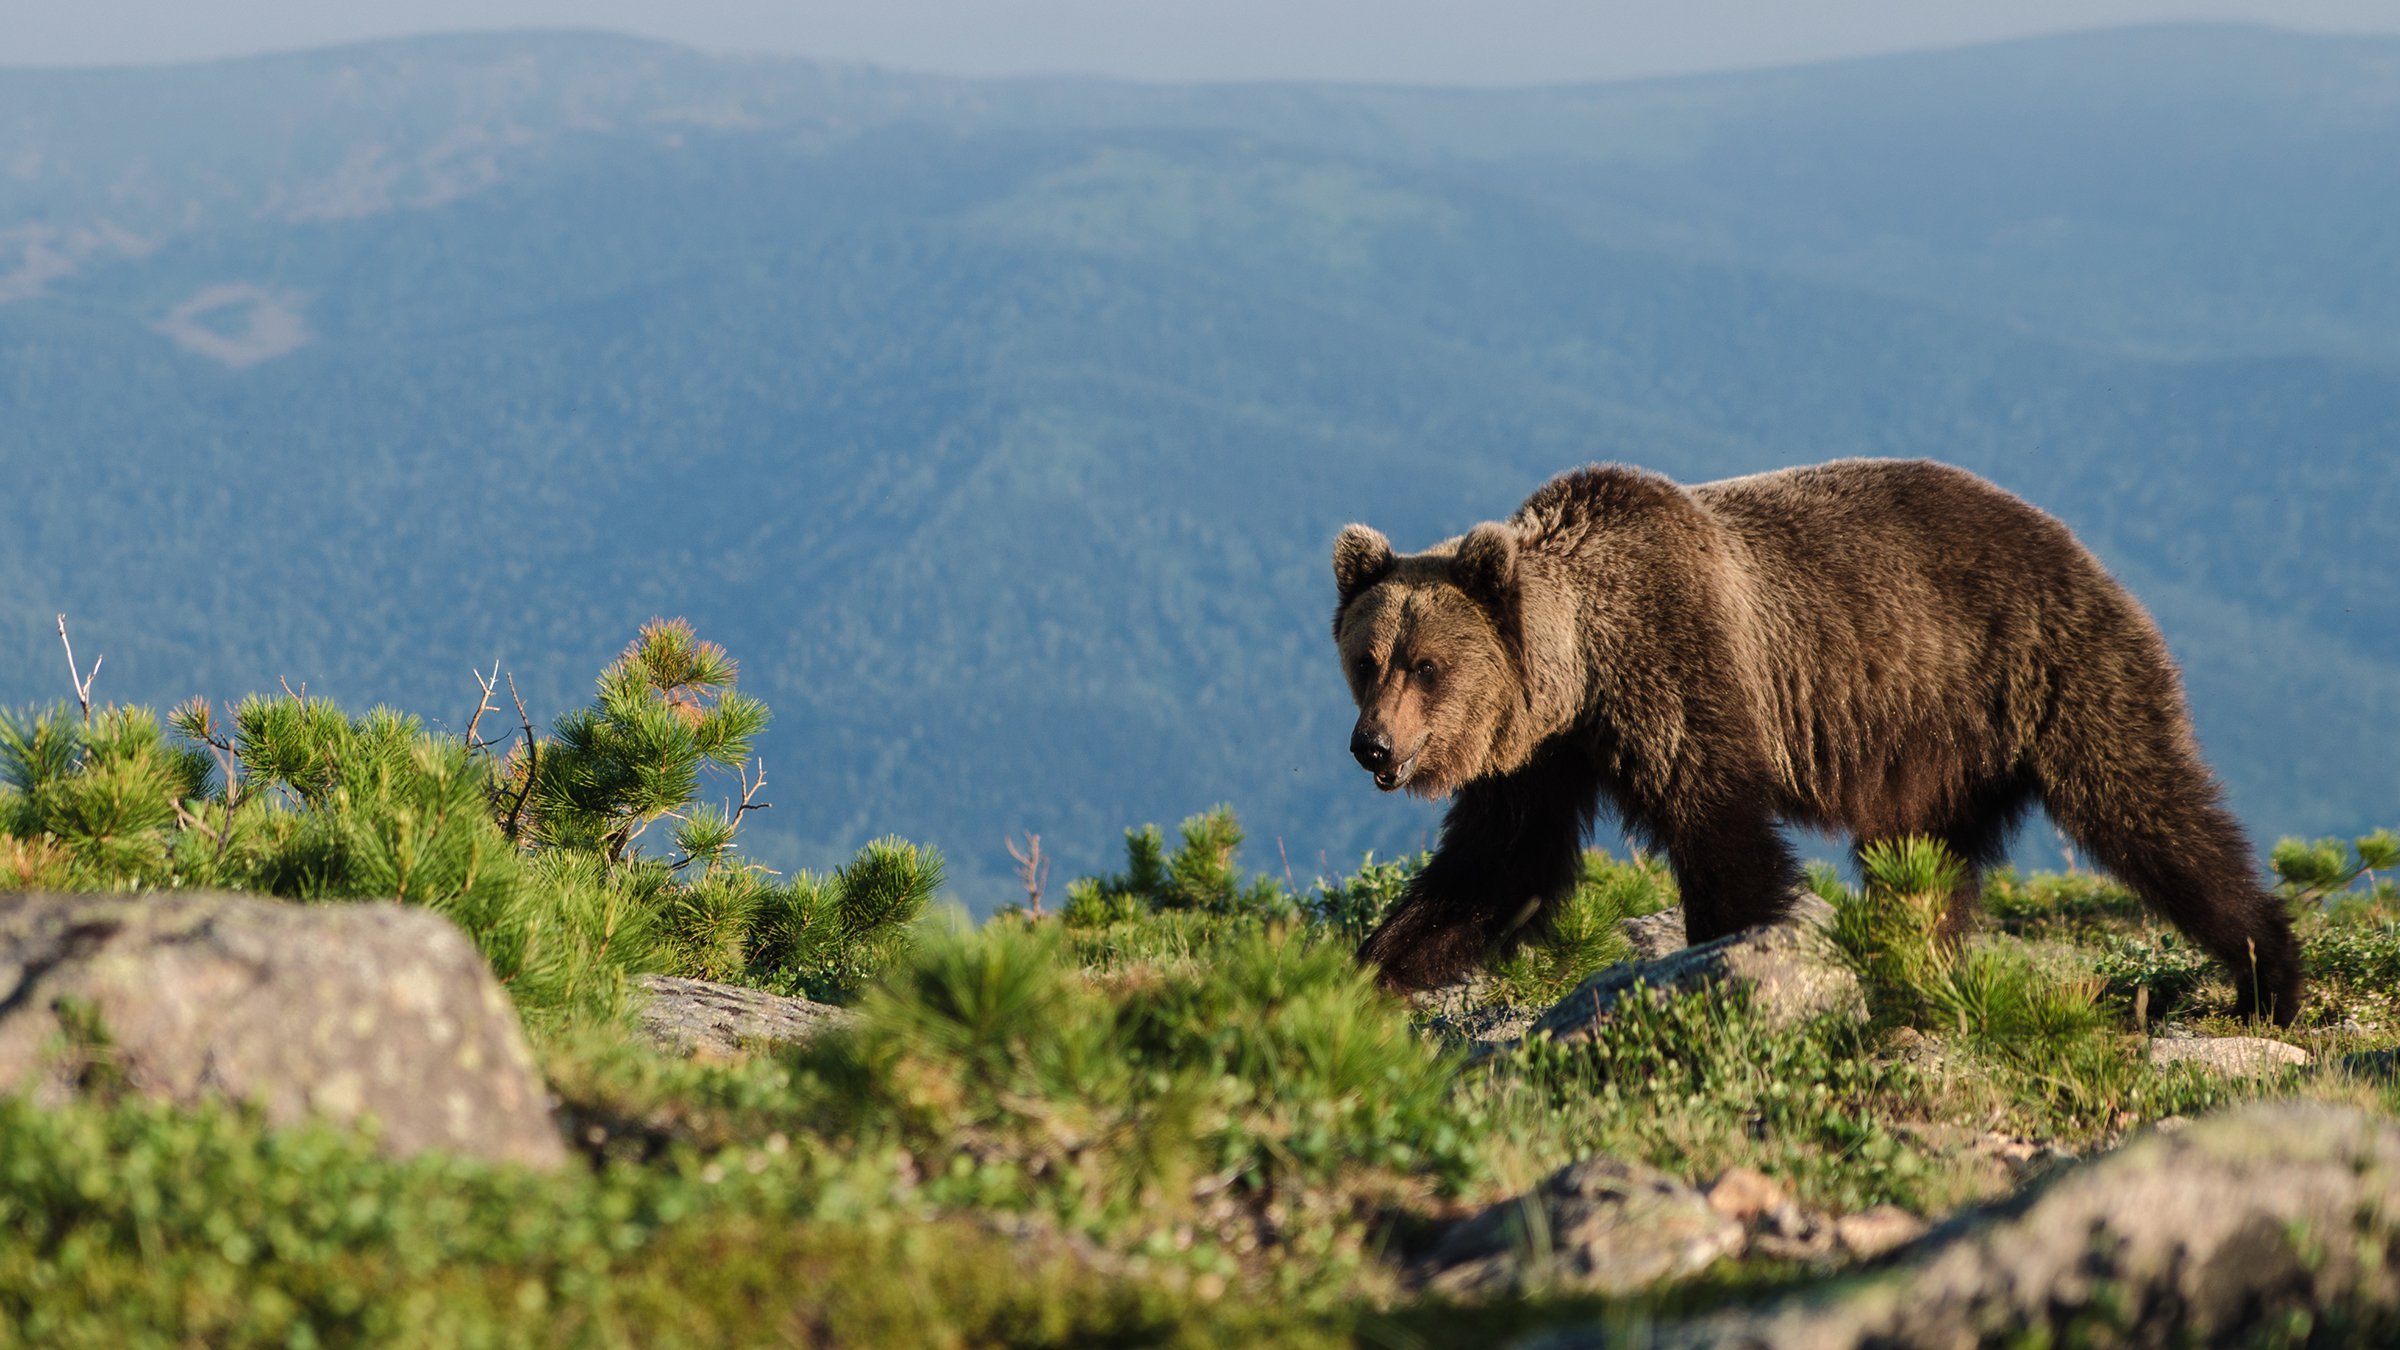 Медведь крупное млекопитающее. Кузнецкий Алатау бурый медведь. Гора медвежья Кузнецкий Алатау. Кузнецкий Алатау заповедник фауна. Баргузинский заповедник бурый медведь.